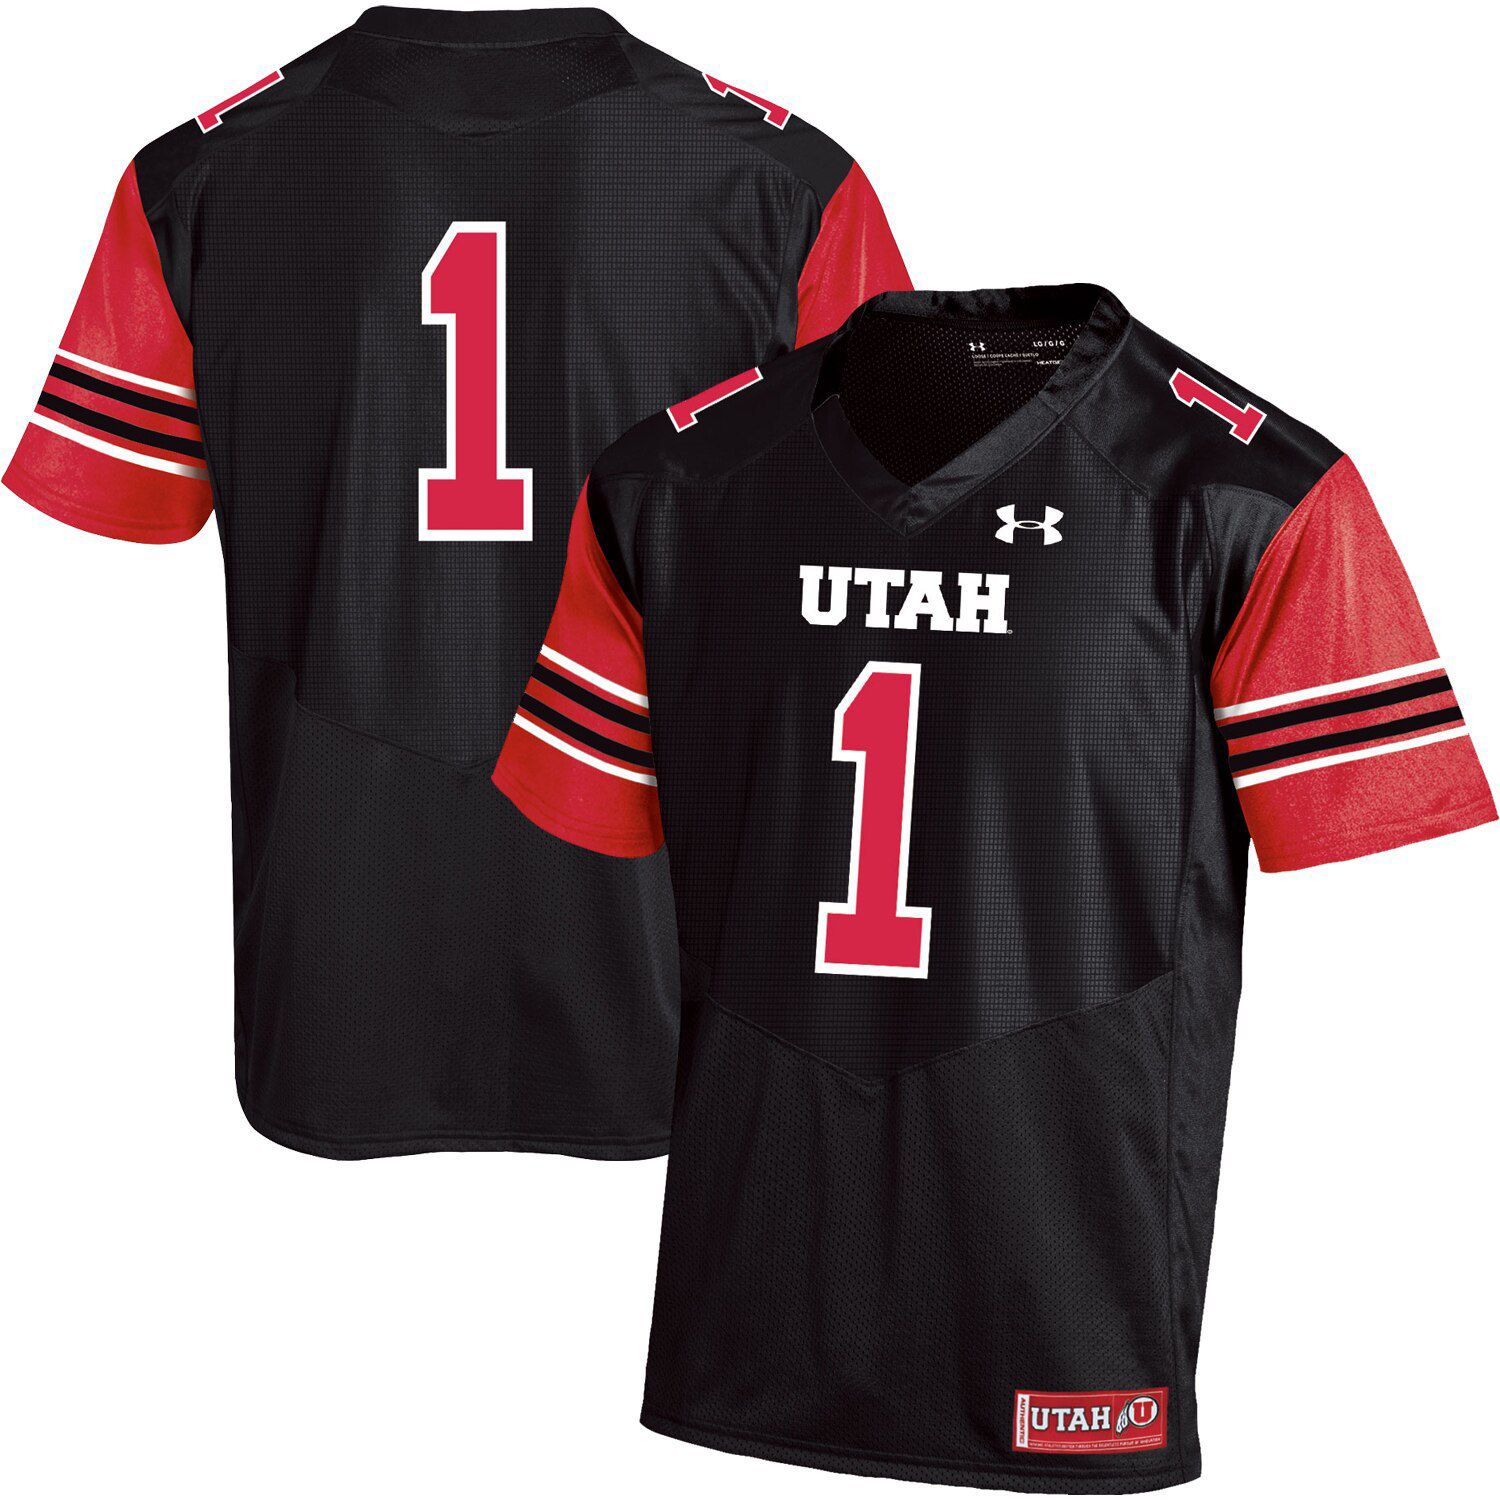 Utah Utes Team Replica Football Jersey